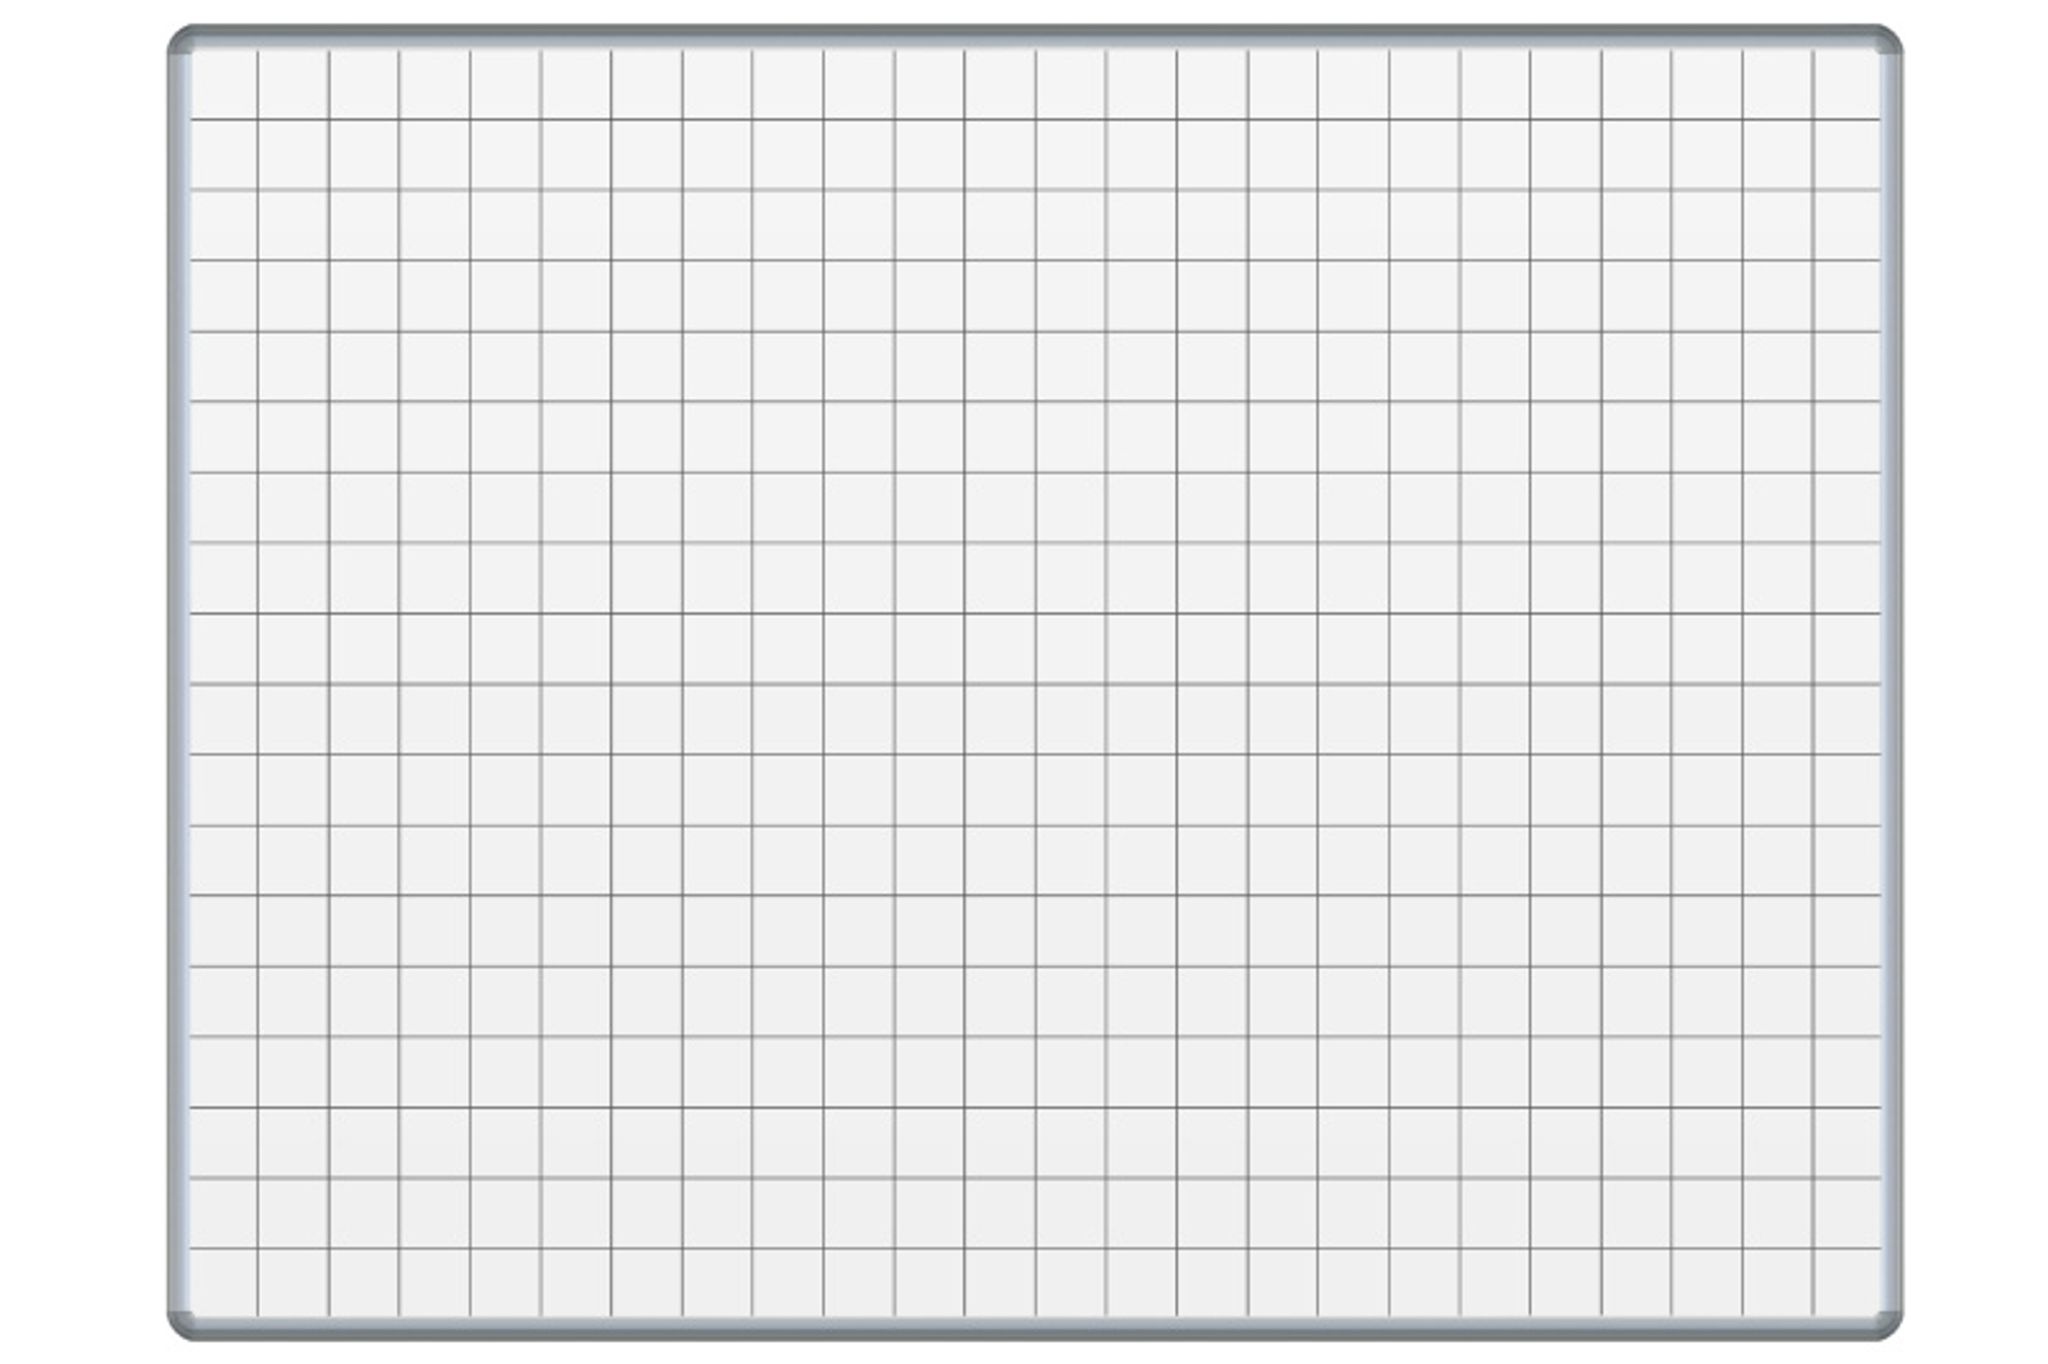 Weiße magnetische Schreibtafel mit Keramikoberfläche ekoTAB, bedruckt, 1200 x 1000 mm, Quadrat/Raster